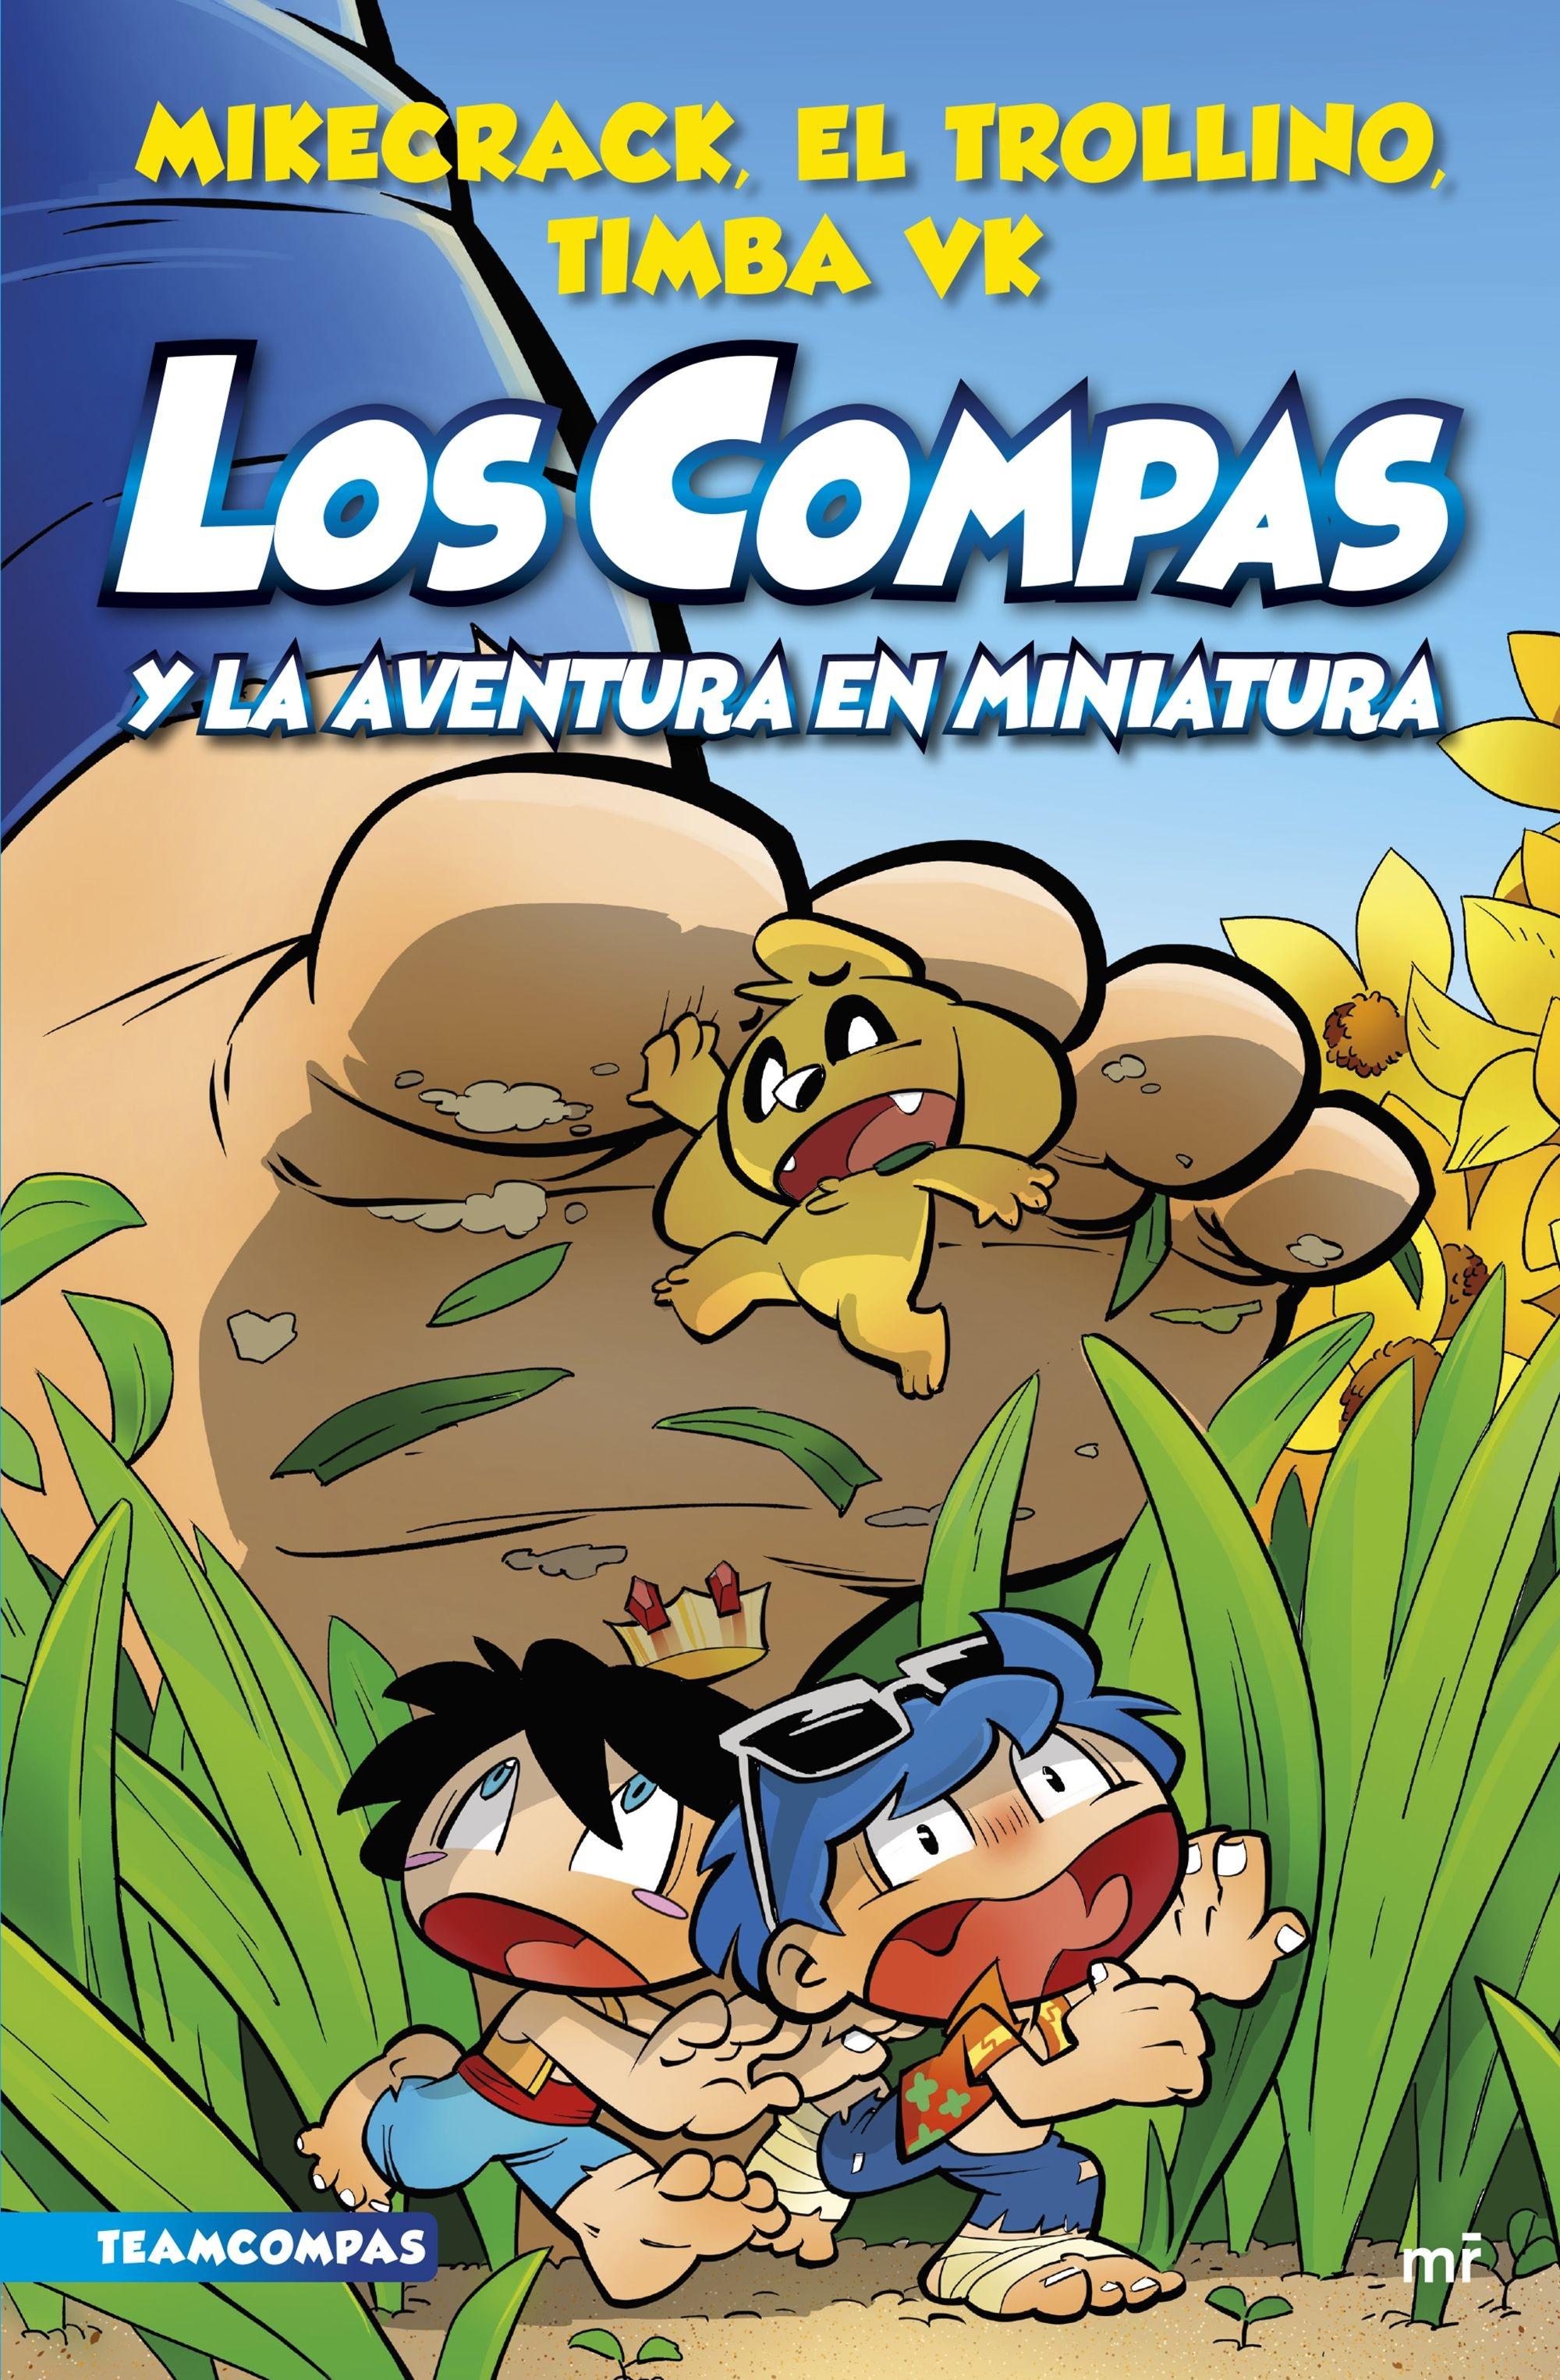 Los Compas 8 "Los compas y la aventura en miniatura "